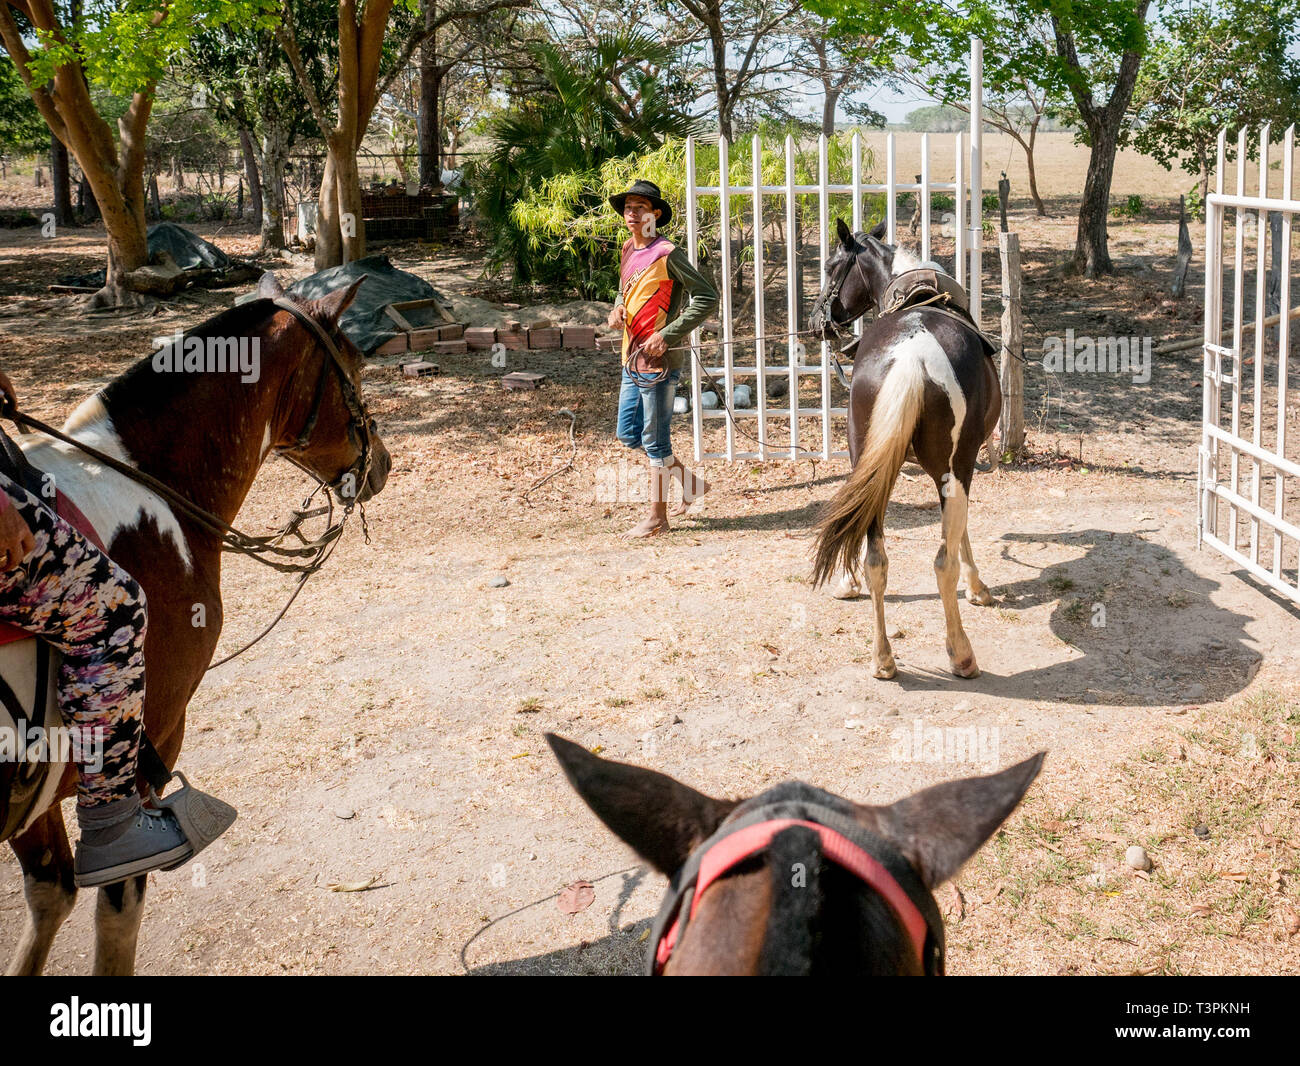 Un cow boy visto lavorare con i cavalli. Cowboys colombiano avendo cura di vacche nella regione di Casanare, orientale della Colombia, tra l'ES, il fiume Orinoco e il confine con il Venezuela. Queste sono le pianure e i pascoli con ampia fiumi e paludi, una regione di grande biodiversità. Ma oggi è in pericolo a causa del cambiamento climatico. Foto Stock